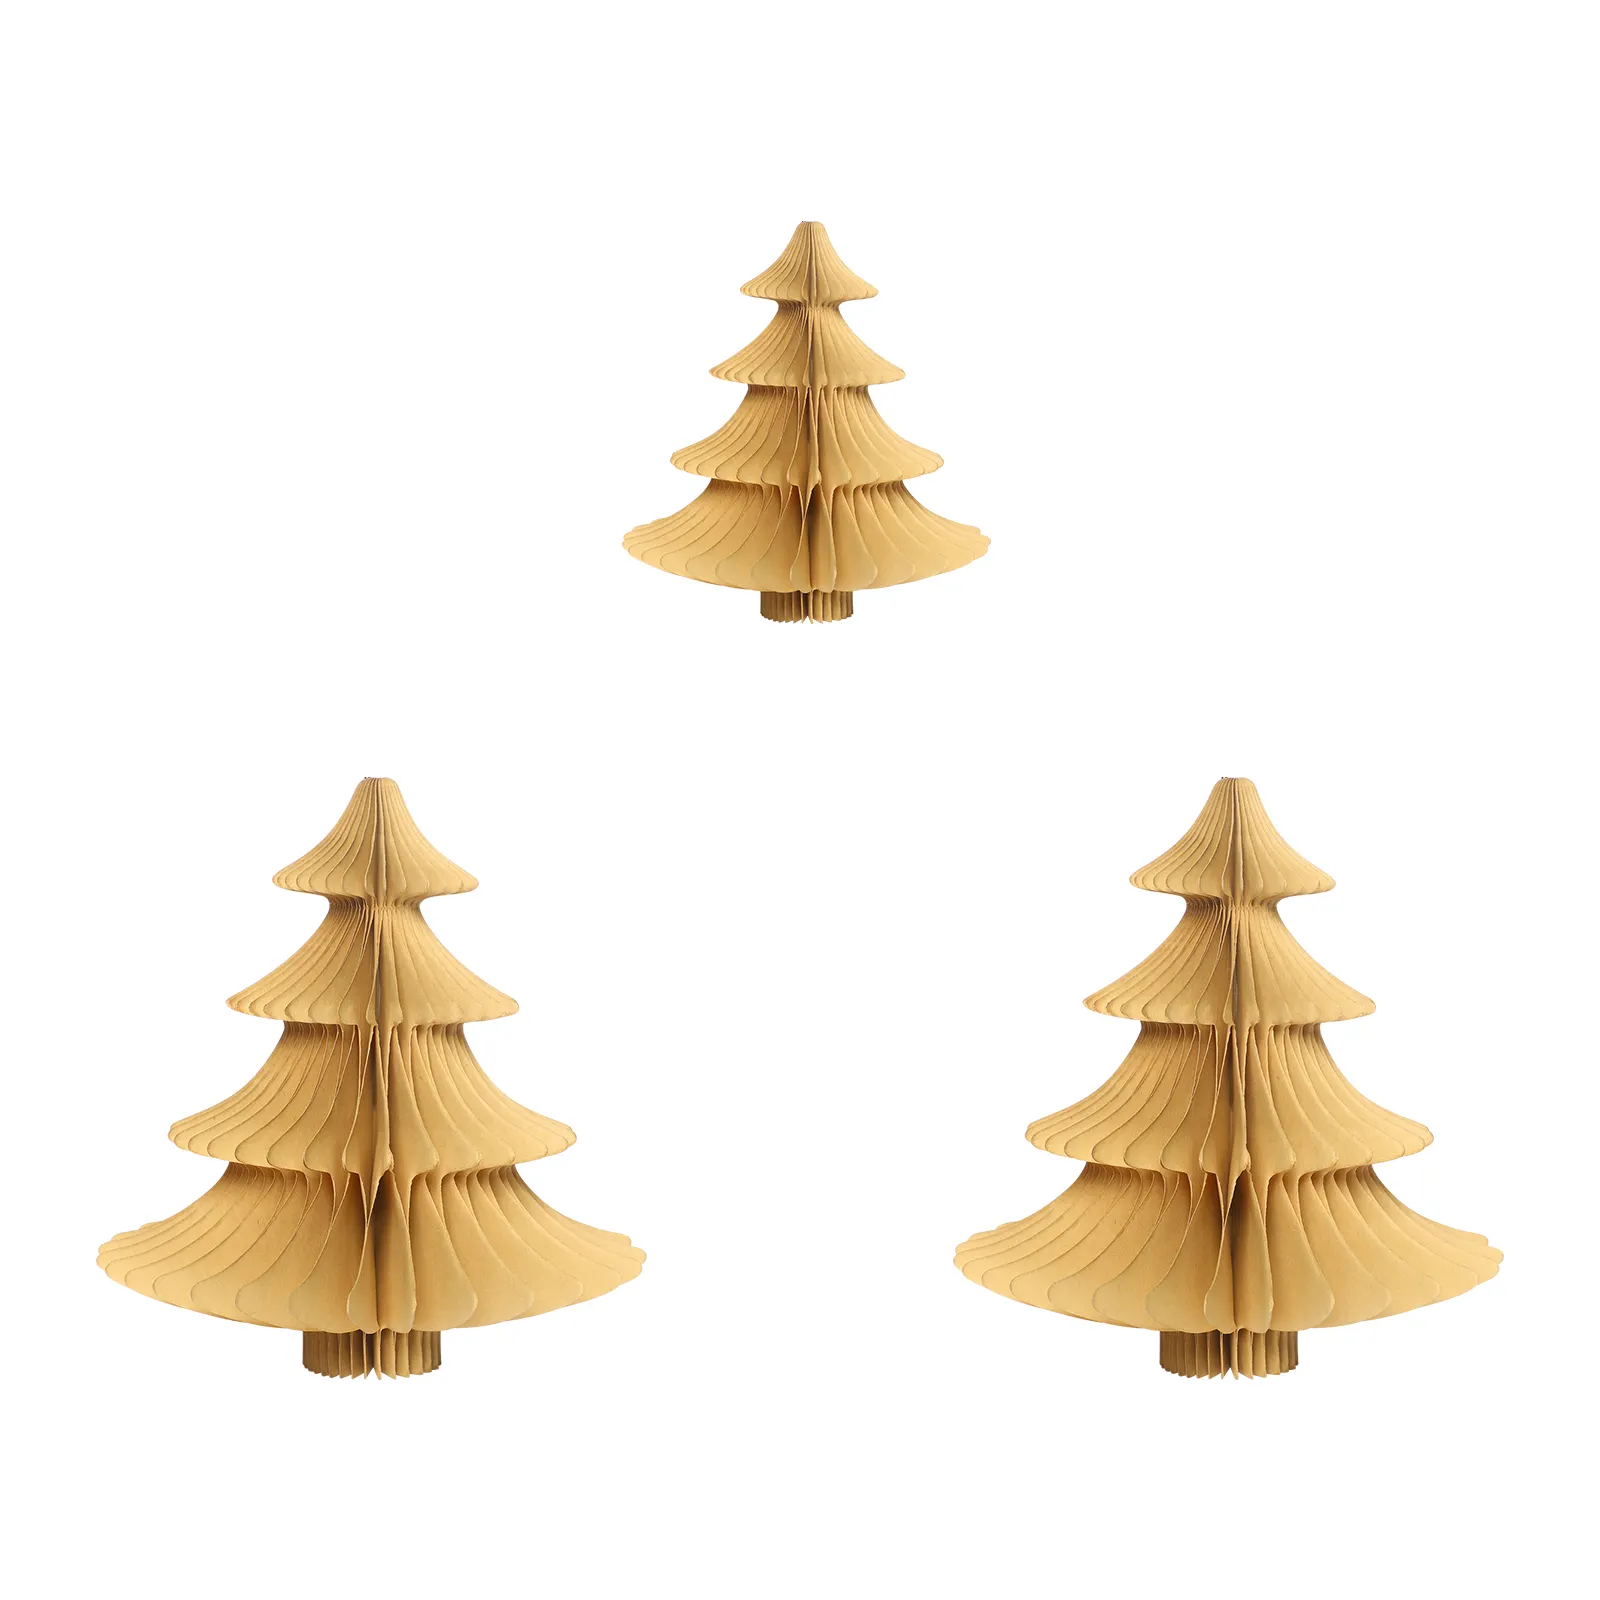 Набор из 3 поделок, экологичных 3D-бумажных подвесных украшений для рождественской елки, идеально подходит для рождественского сезона, праздничного витрины, украшения для вечеринки